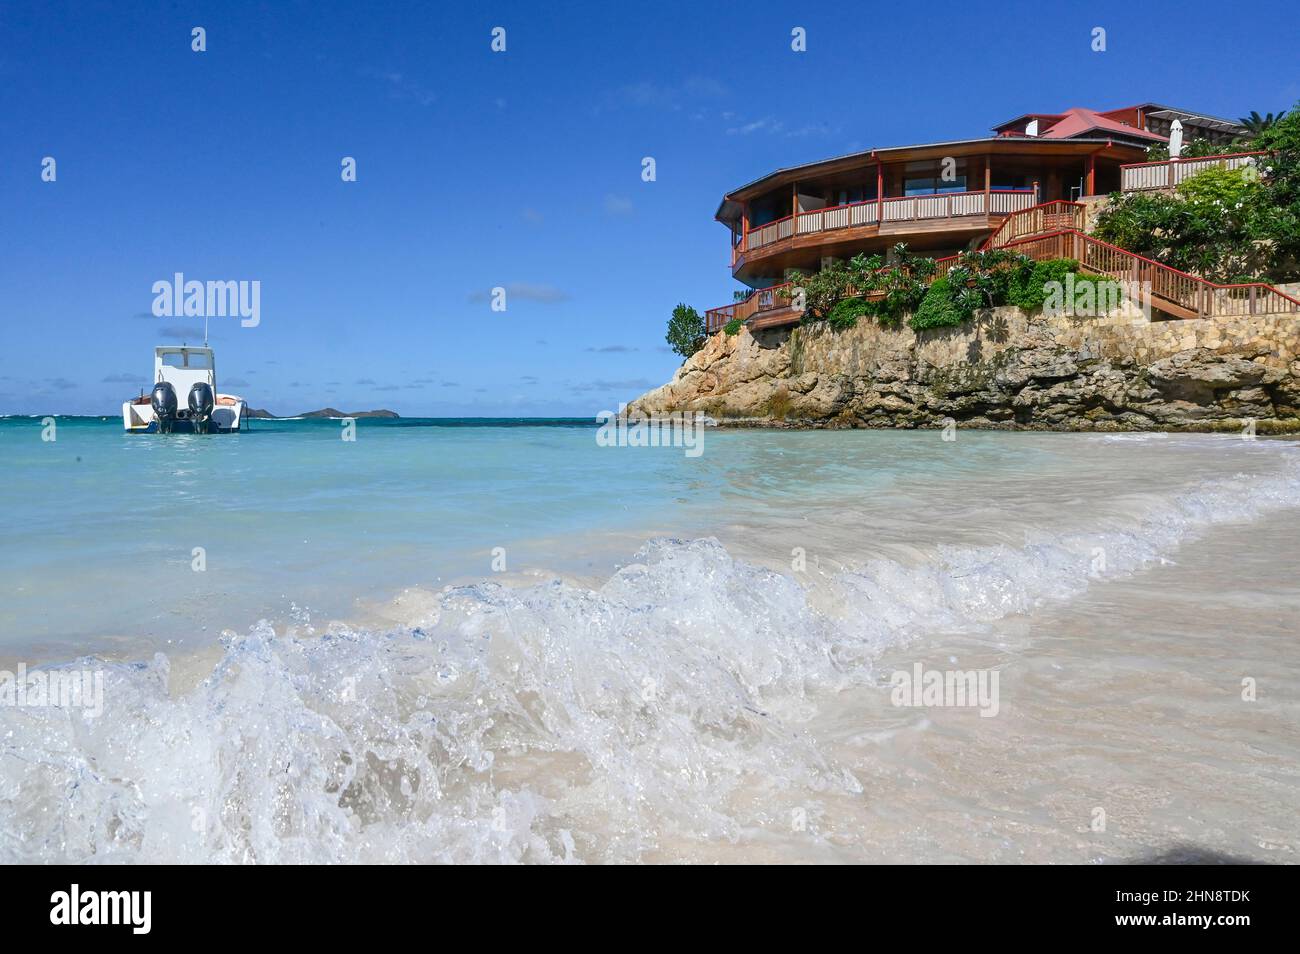 Das Eden Rock Hotel an der Bucht von Saint-Jean auf der karibischen Insel Saint-Barthélemy (St. Barths) in den Westindischen Inseln Stockfoto